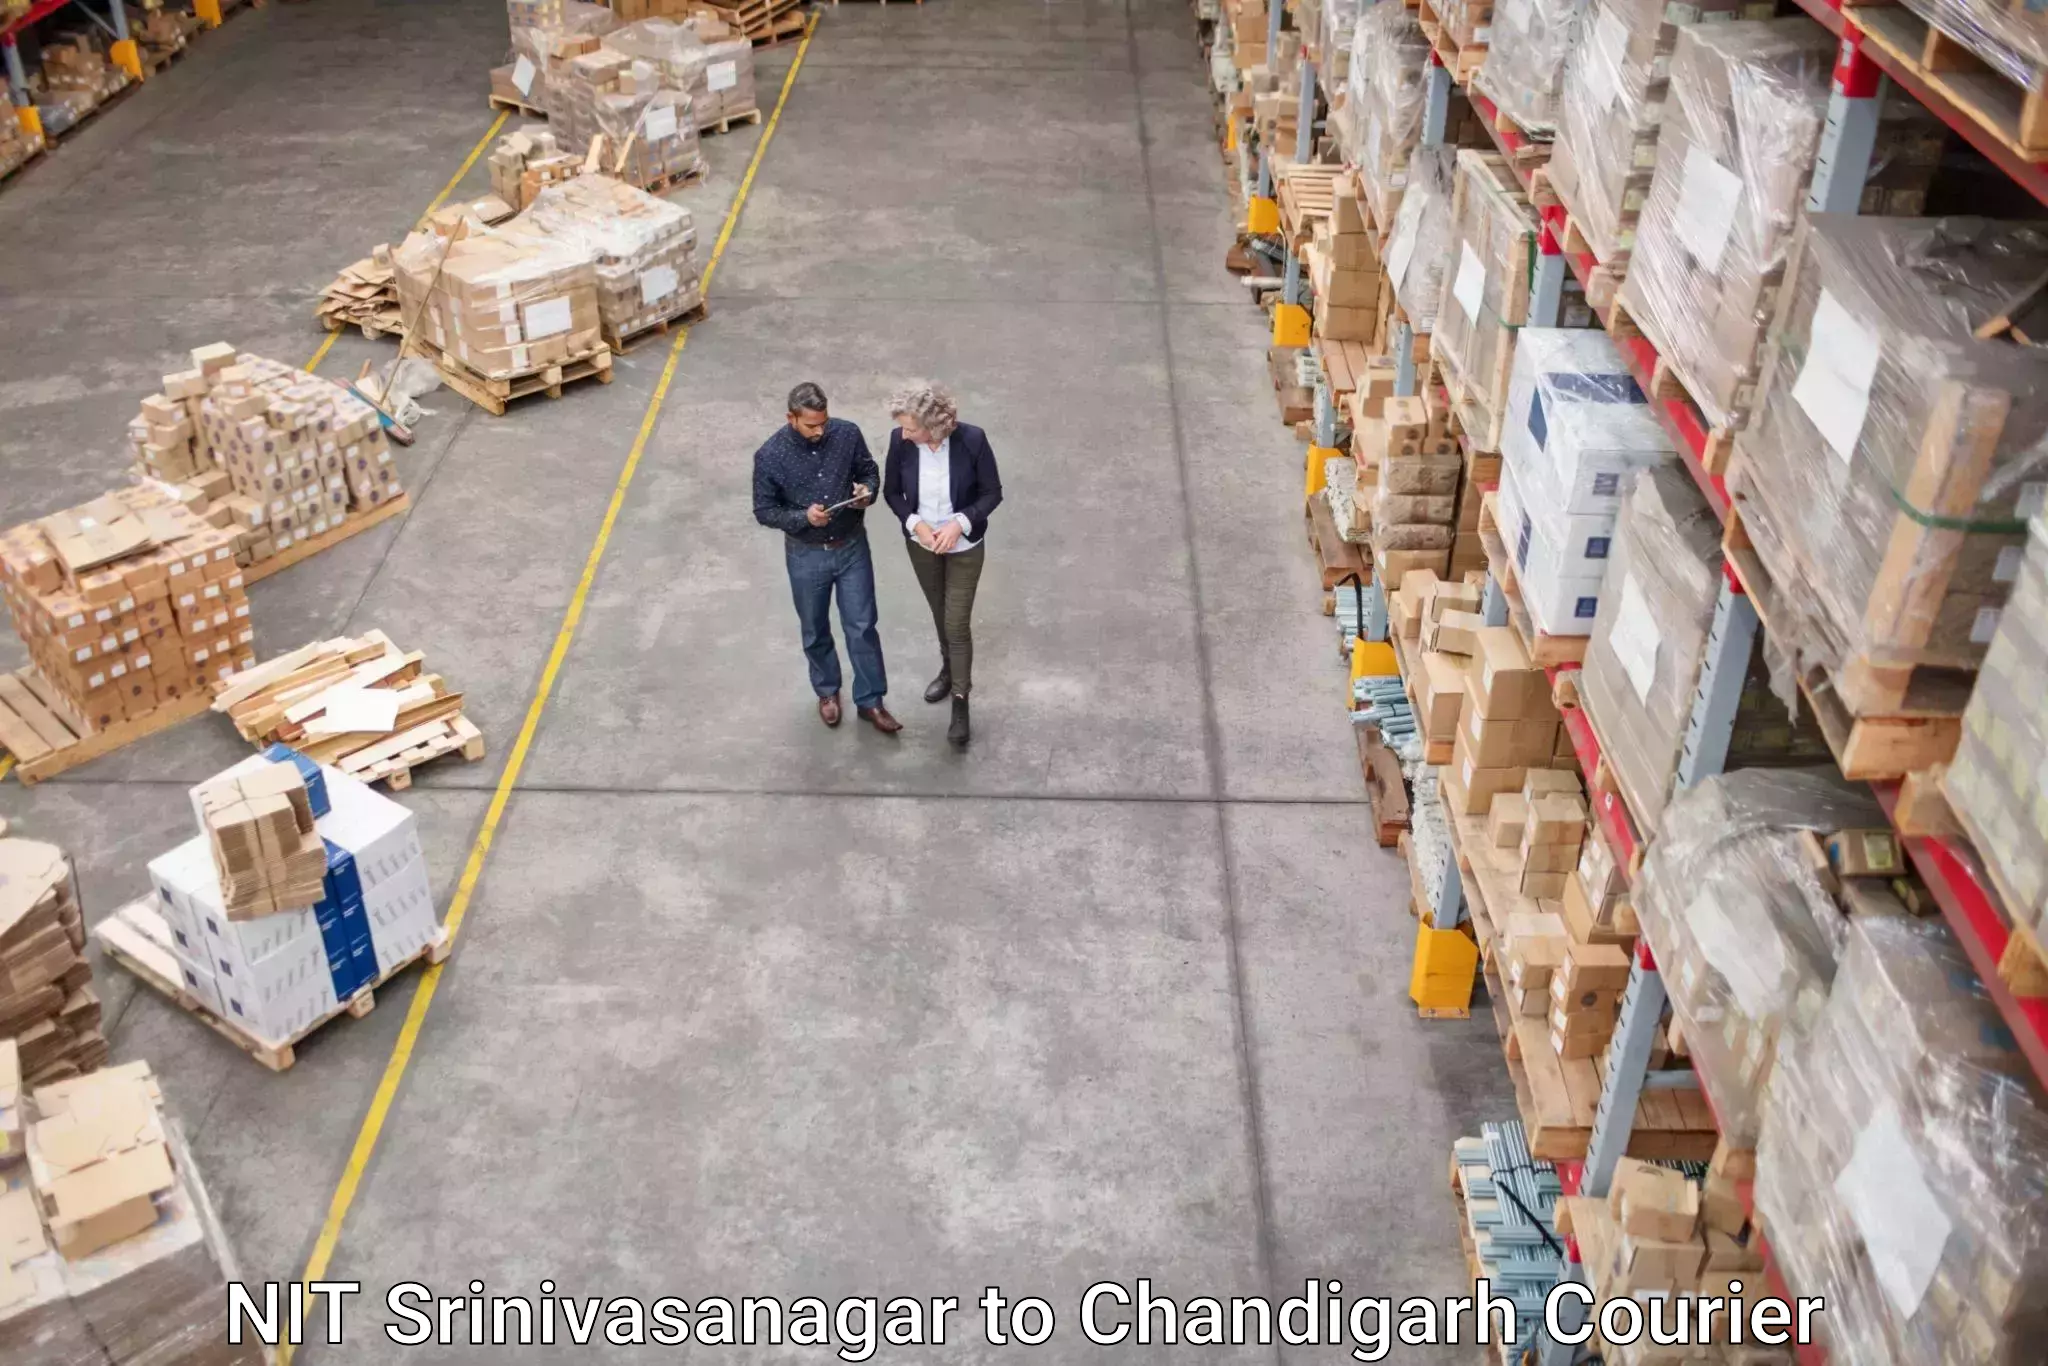 Fragile item shipping in NIT Srinivasanagar to Chandigarh